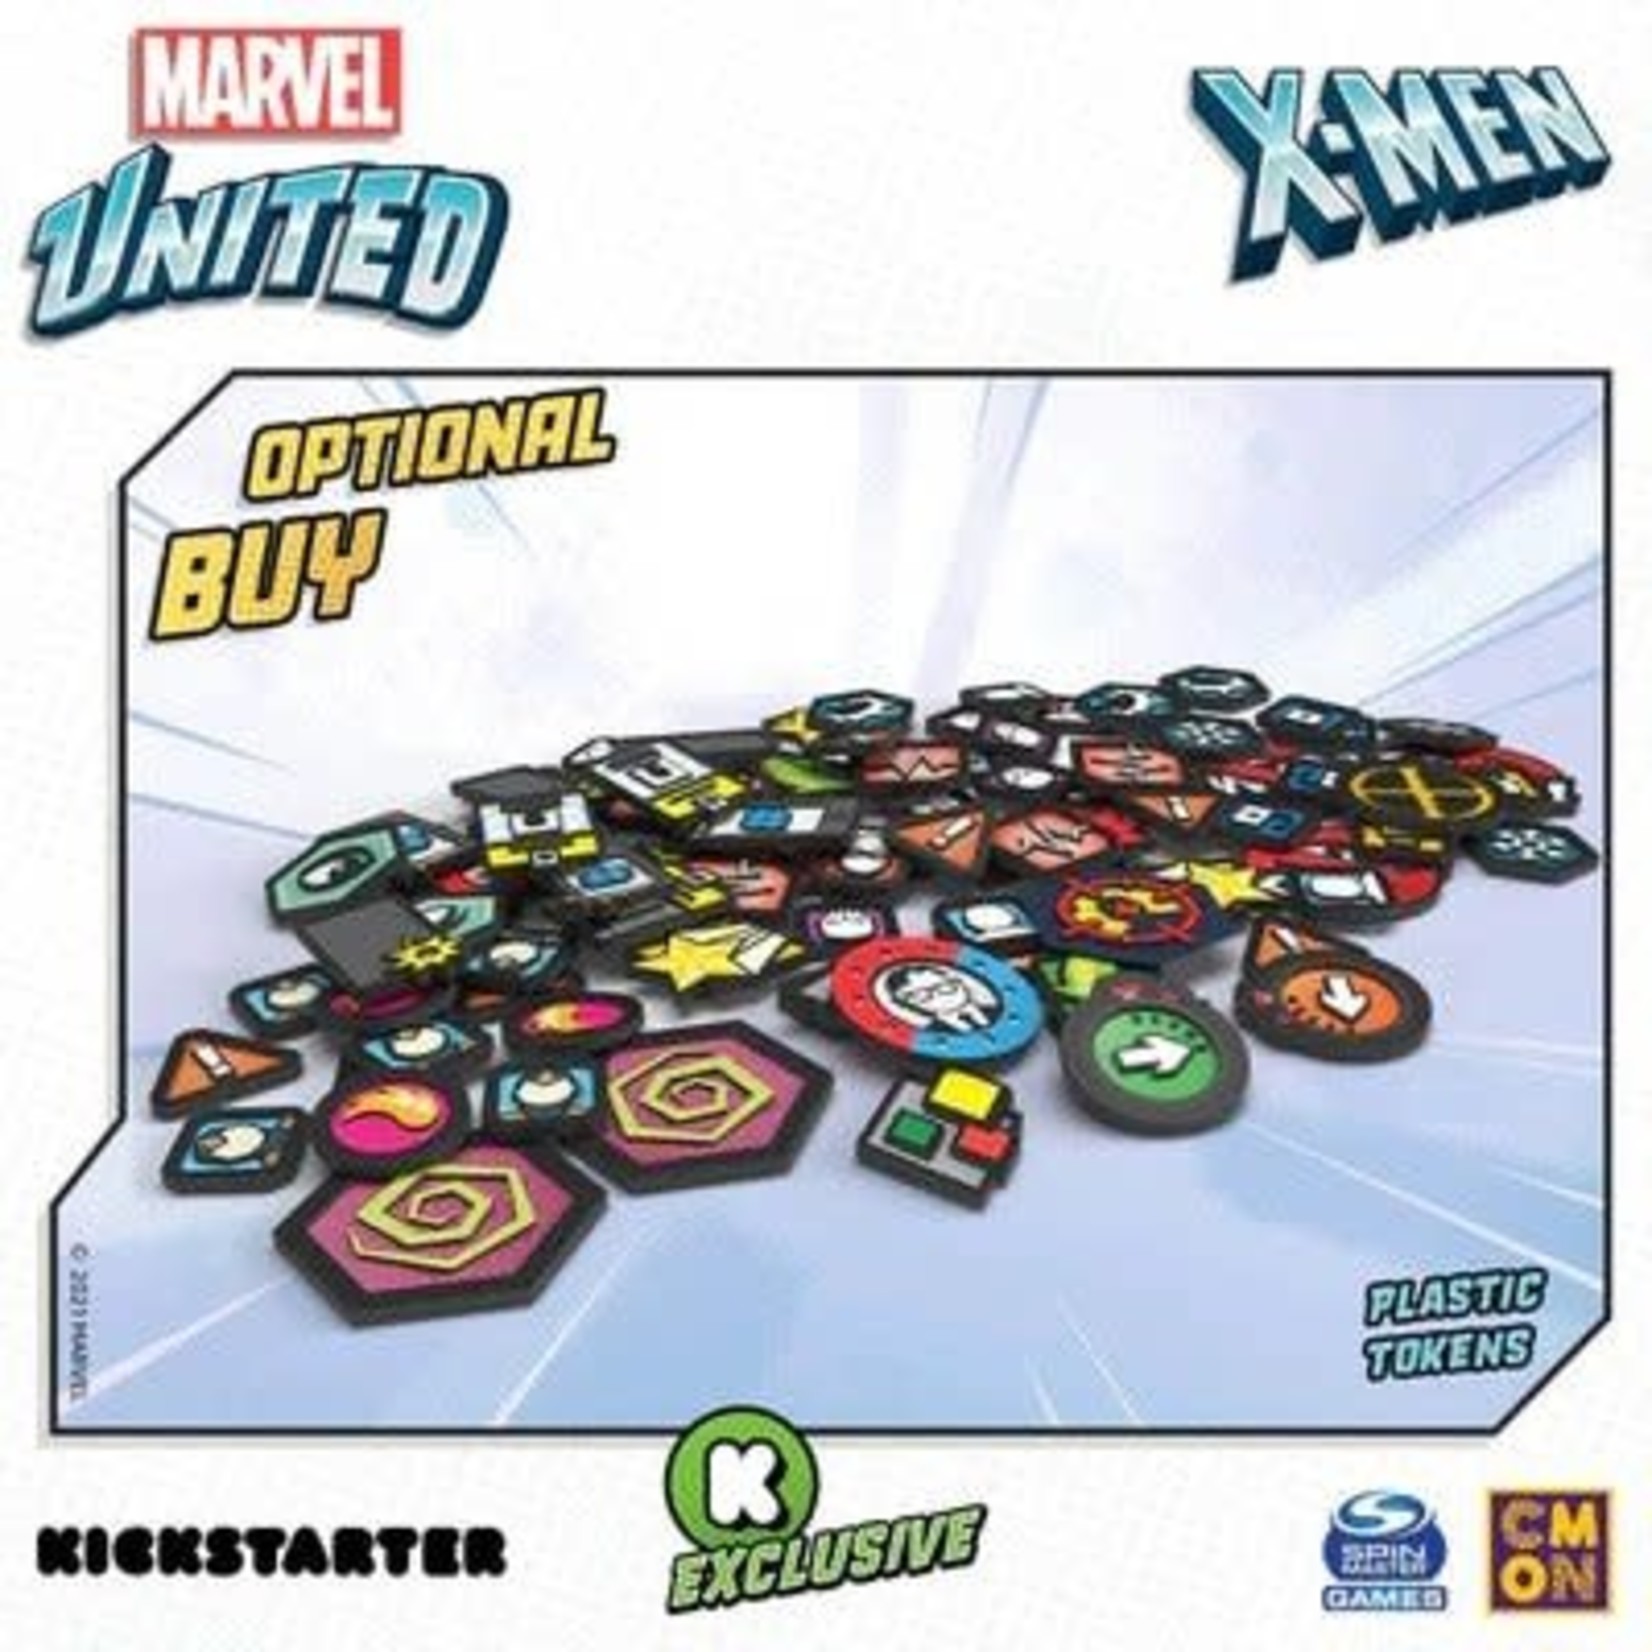 CMON Marvel United X-Men: Plastic Tokens